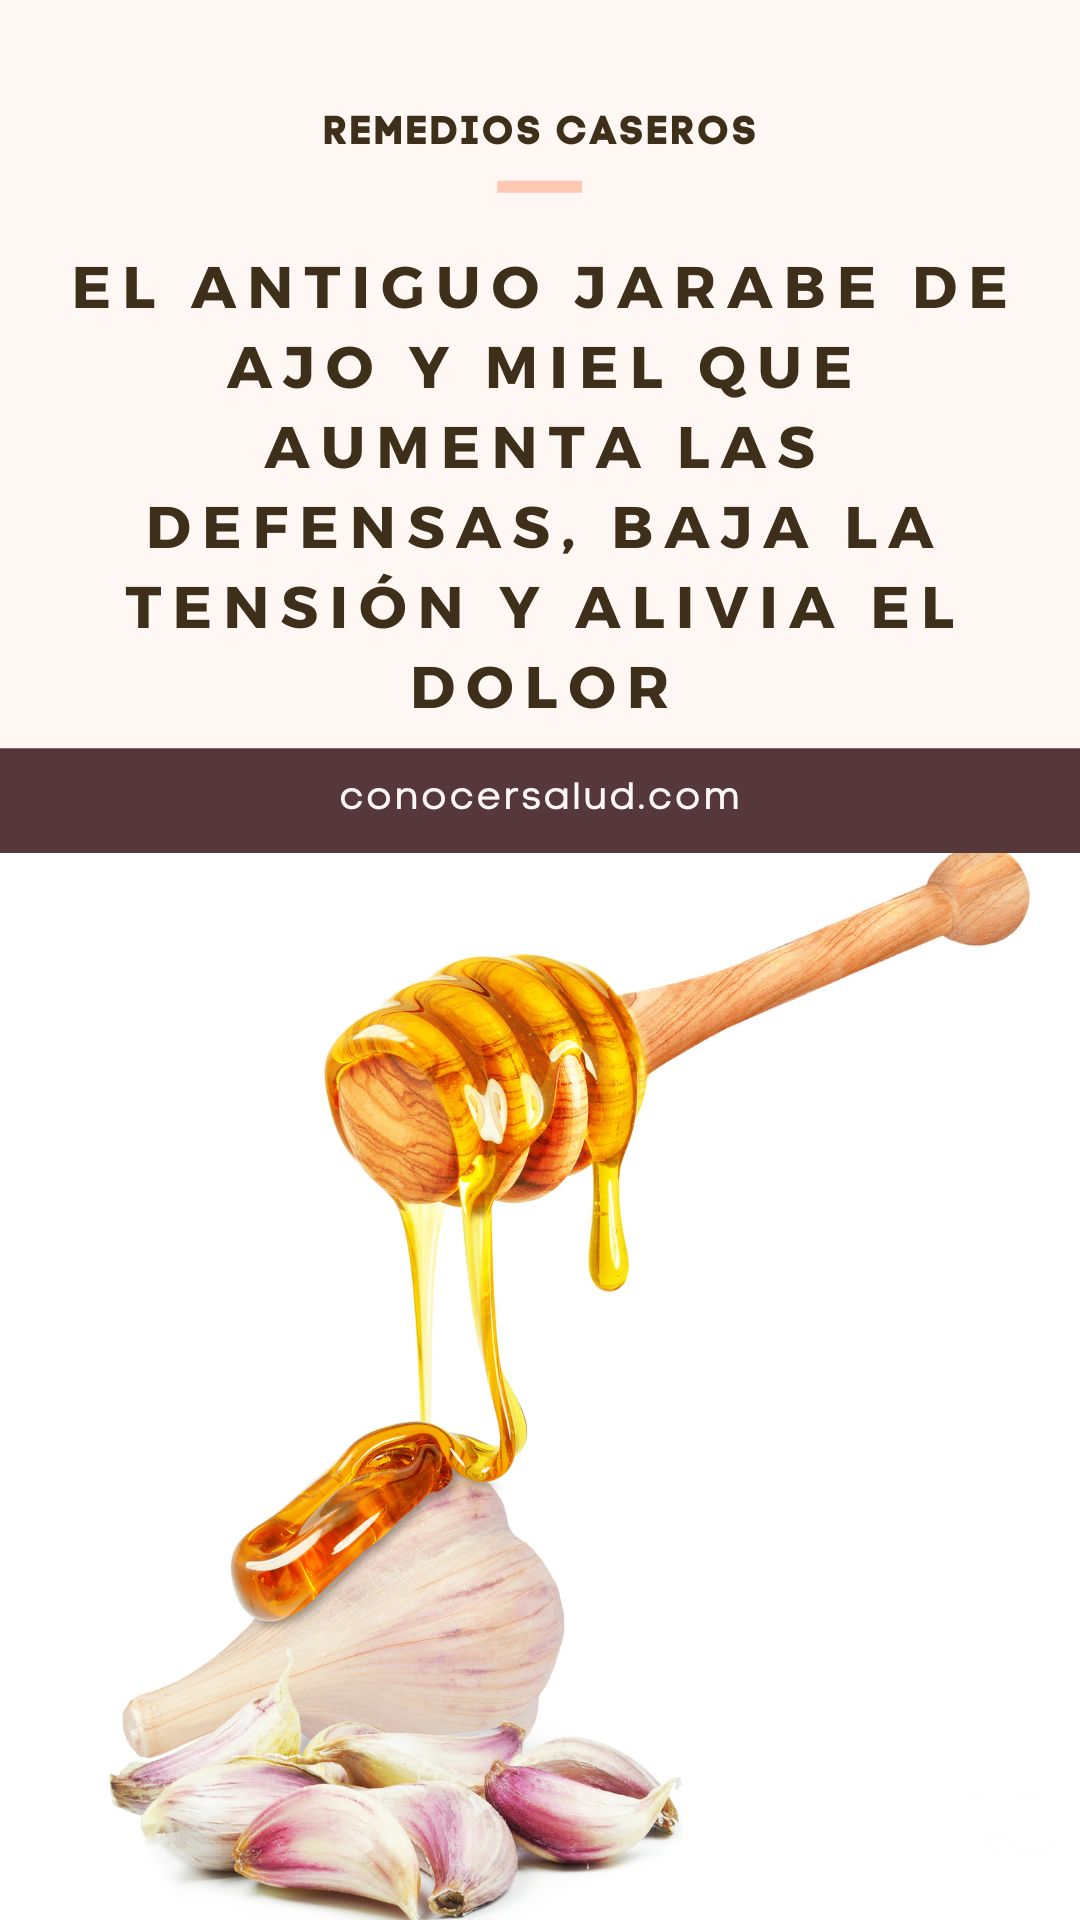 El antiguo jarabe de ajo y miel que aumenta las defensas, baja la tensión y alivia el dolor